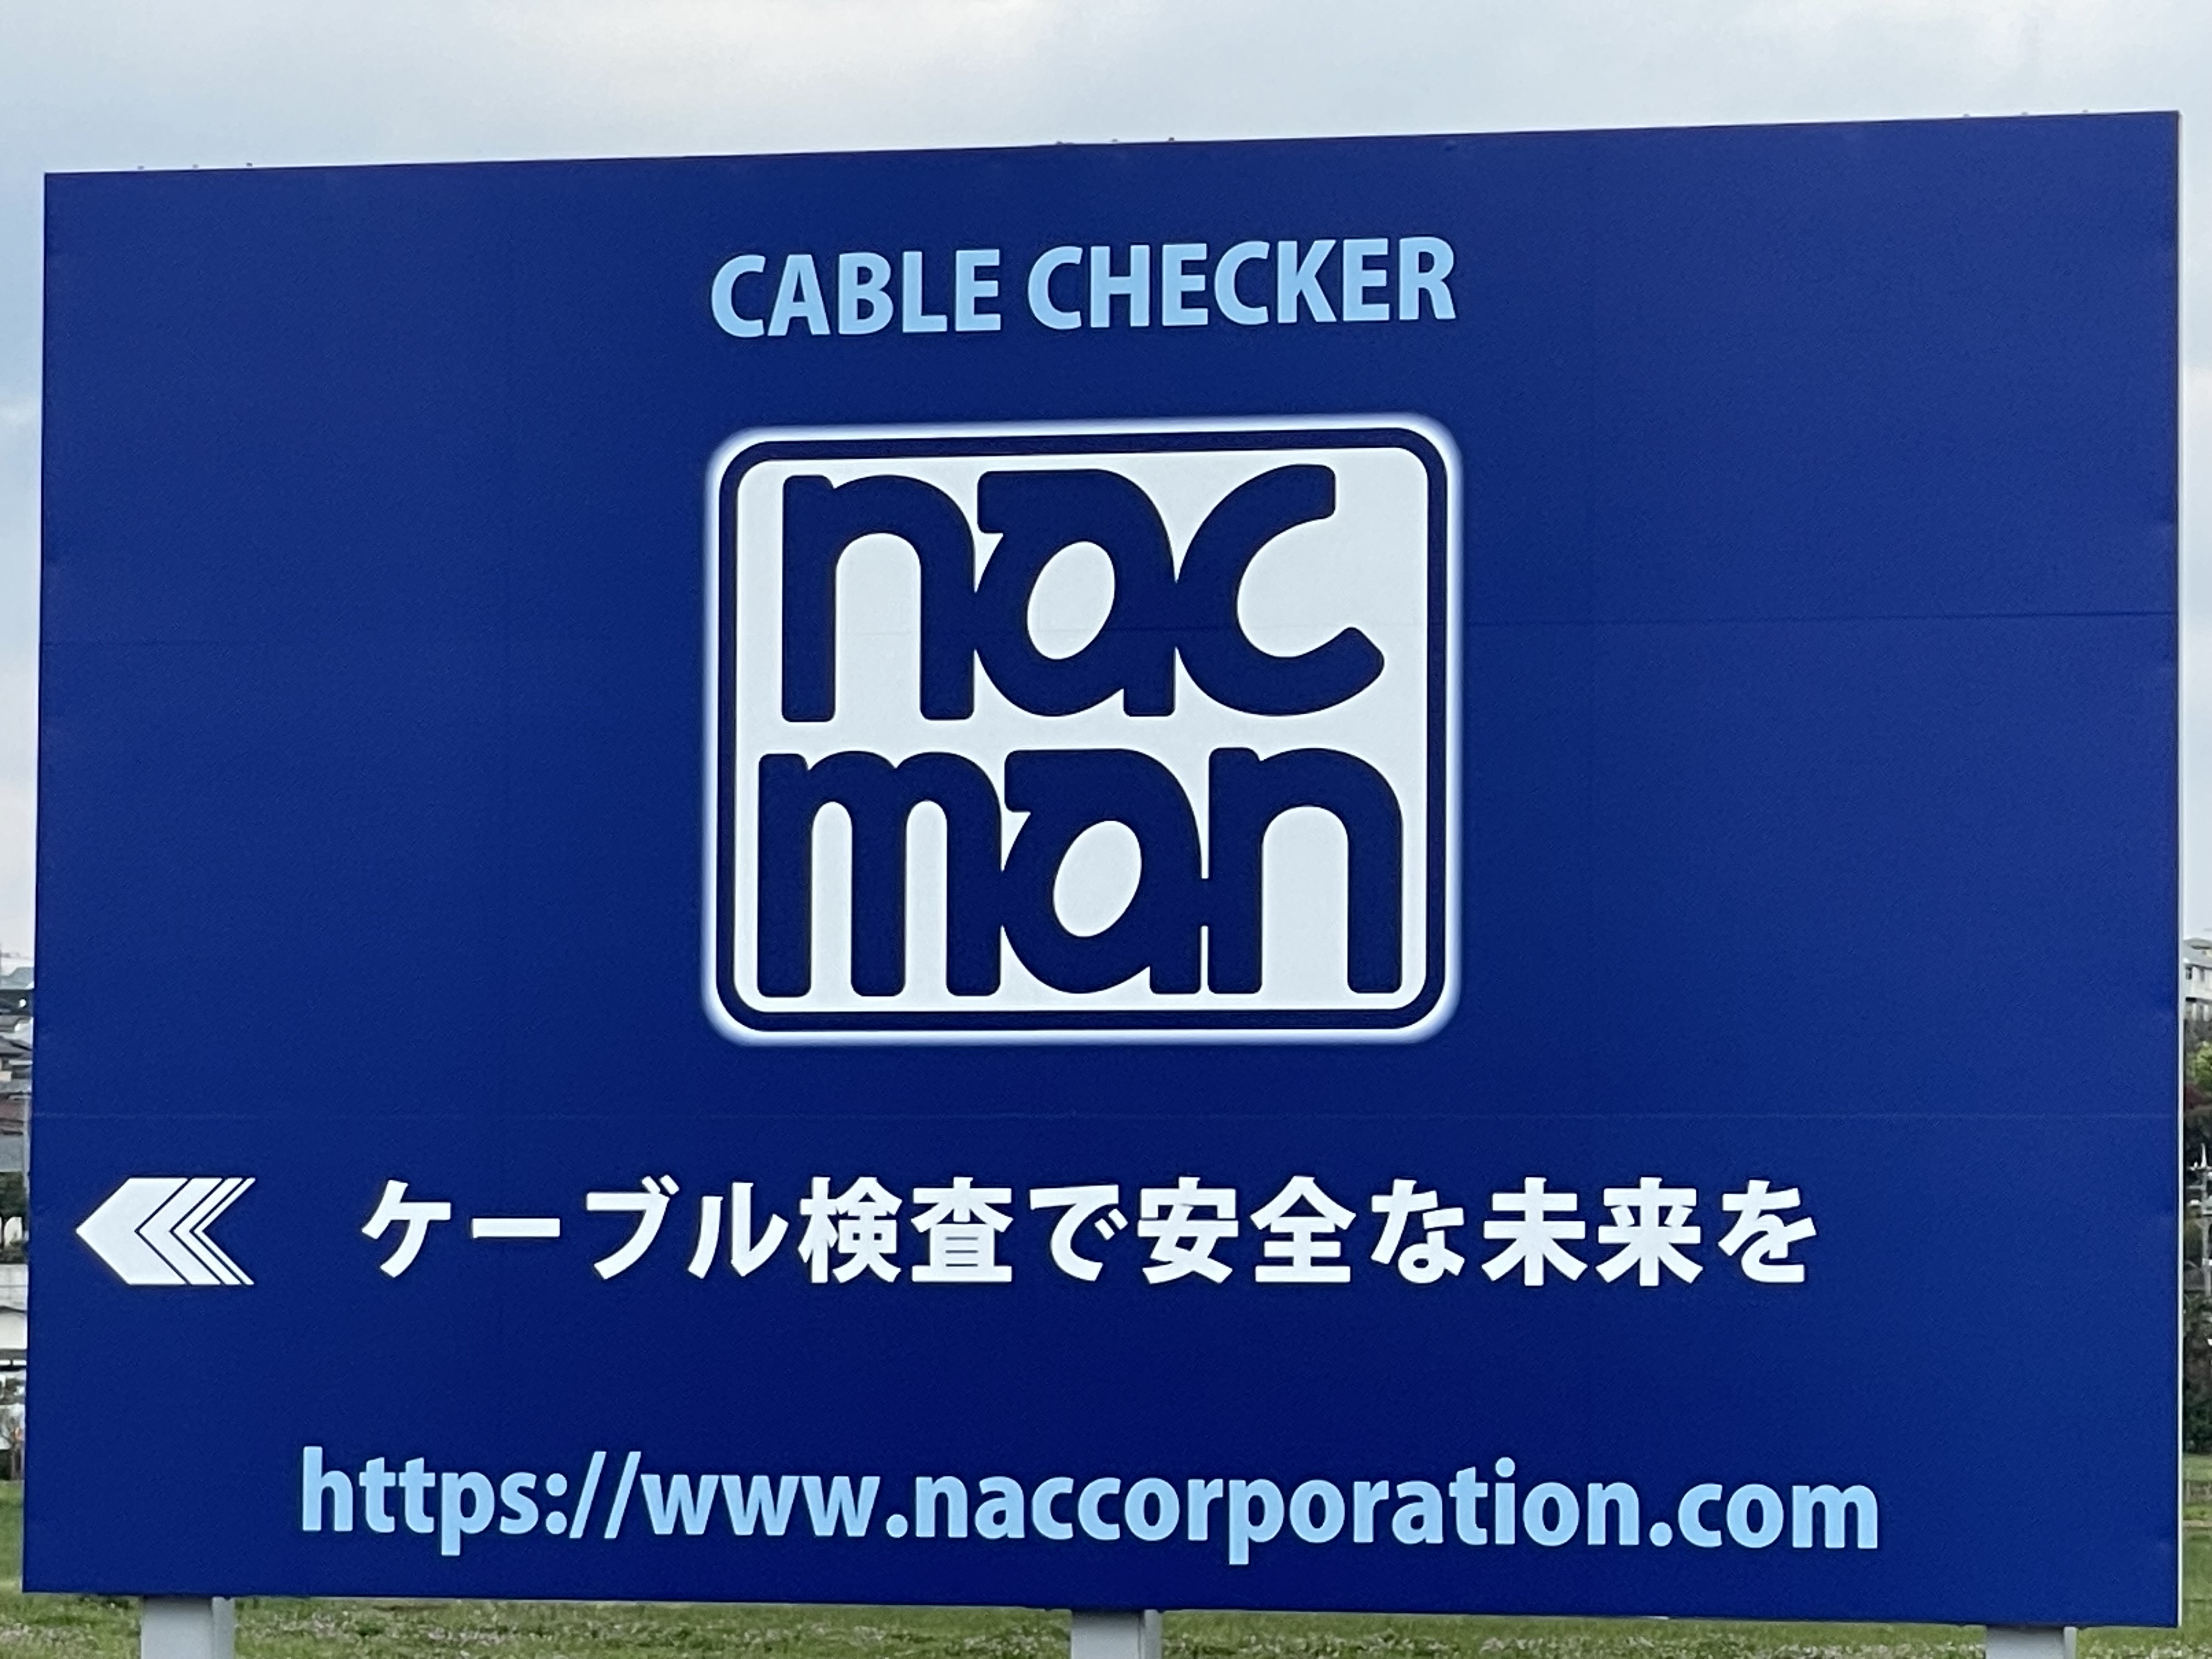 ケーブル検査のnacmanの広告看板ケーブル検査で安全な未来を